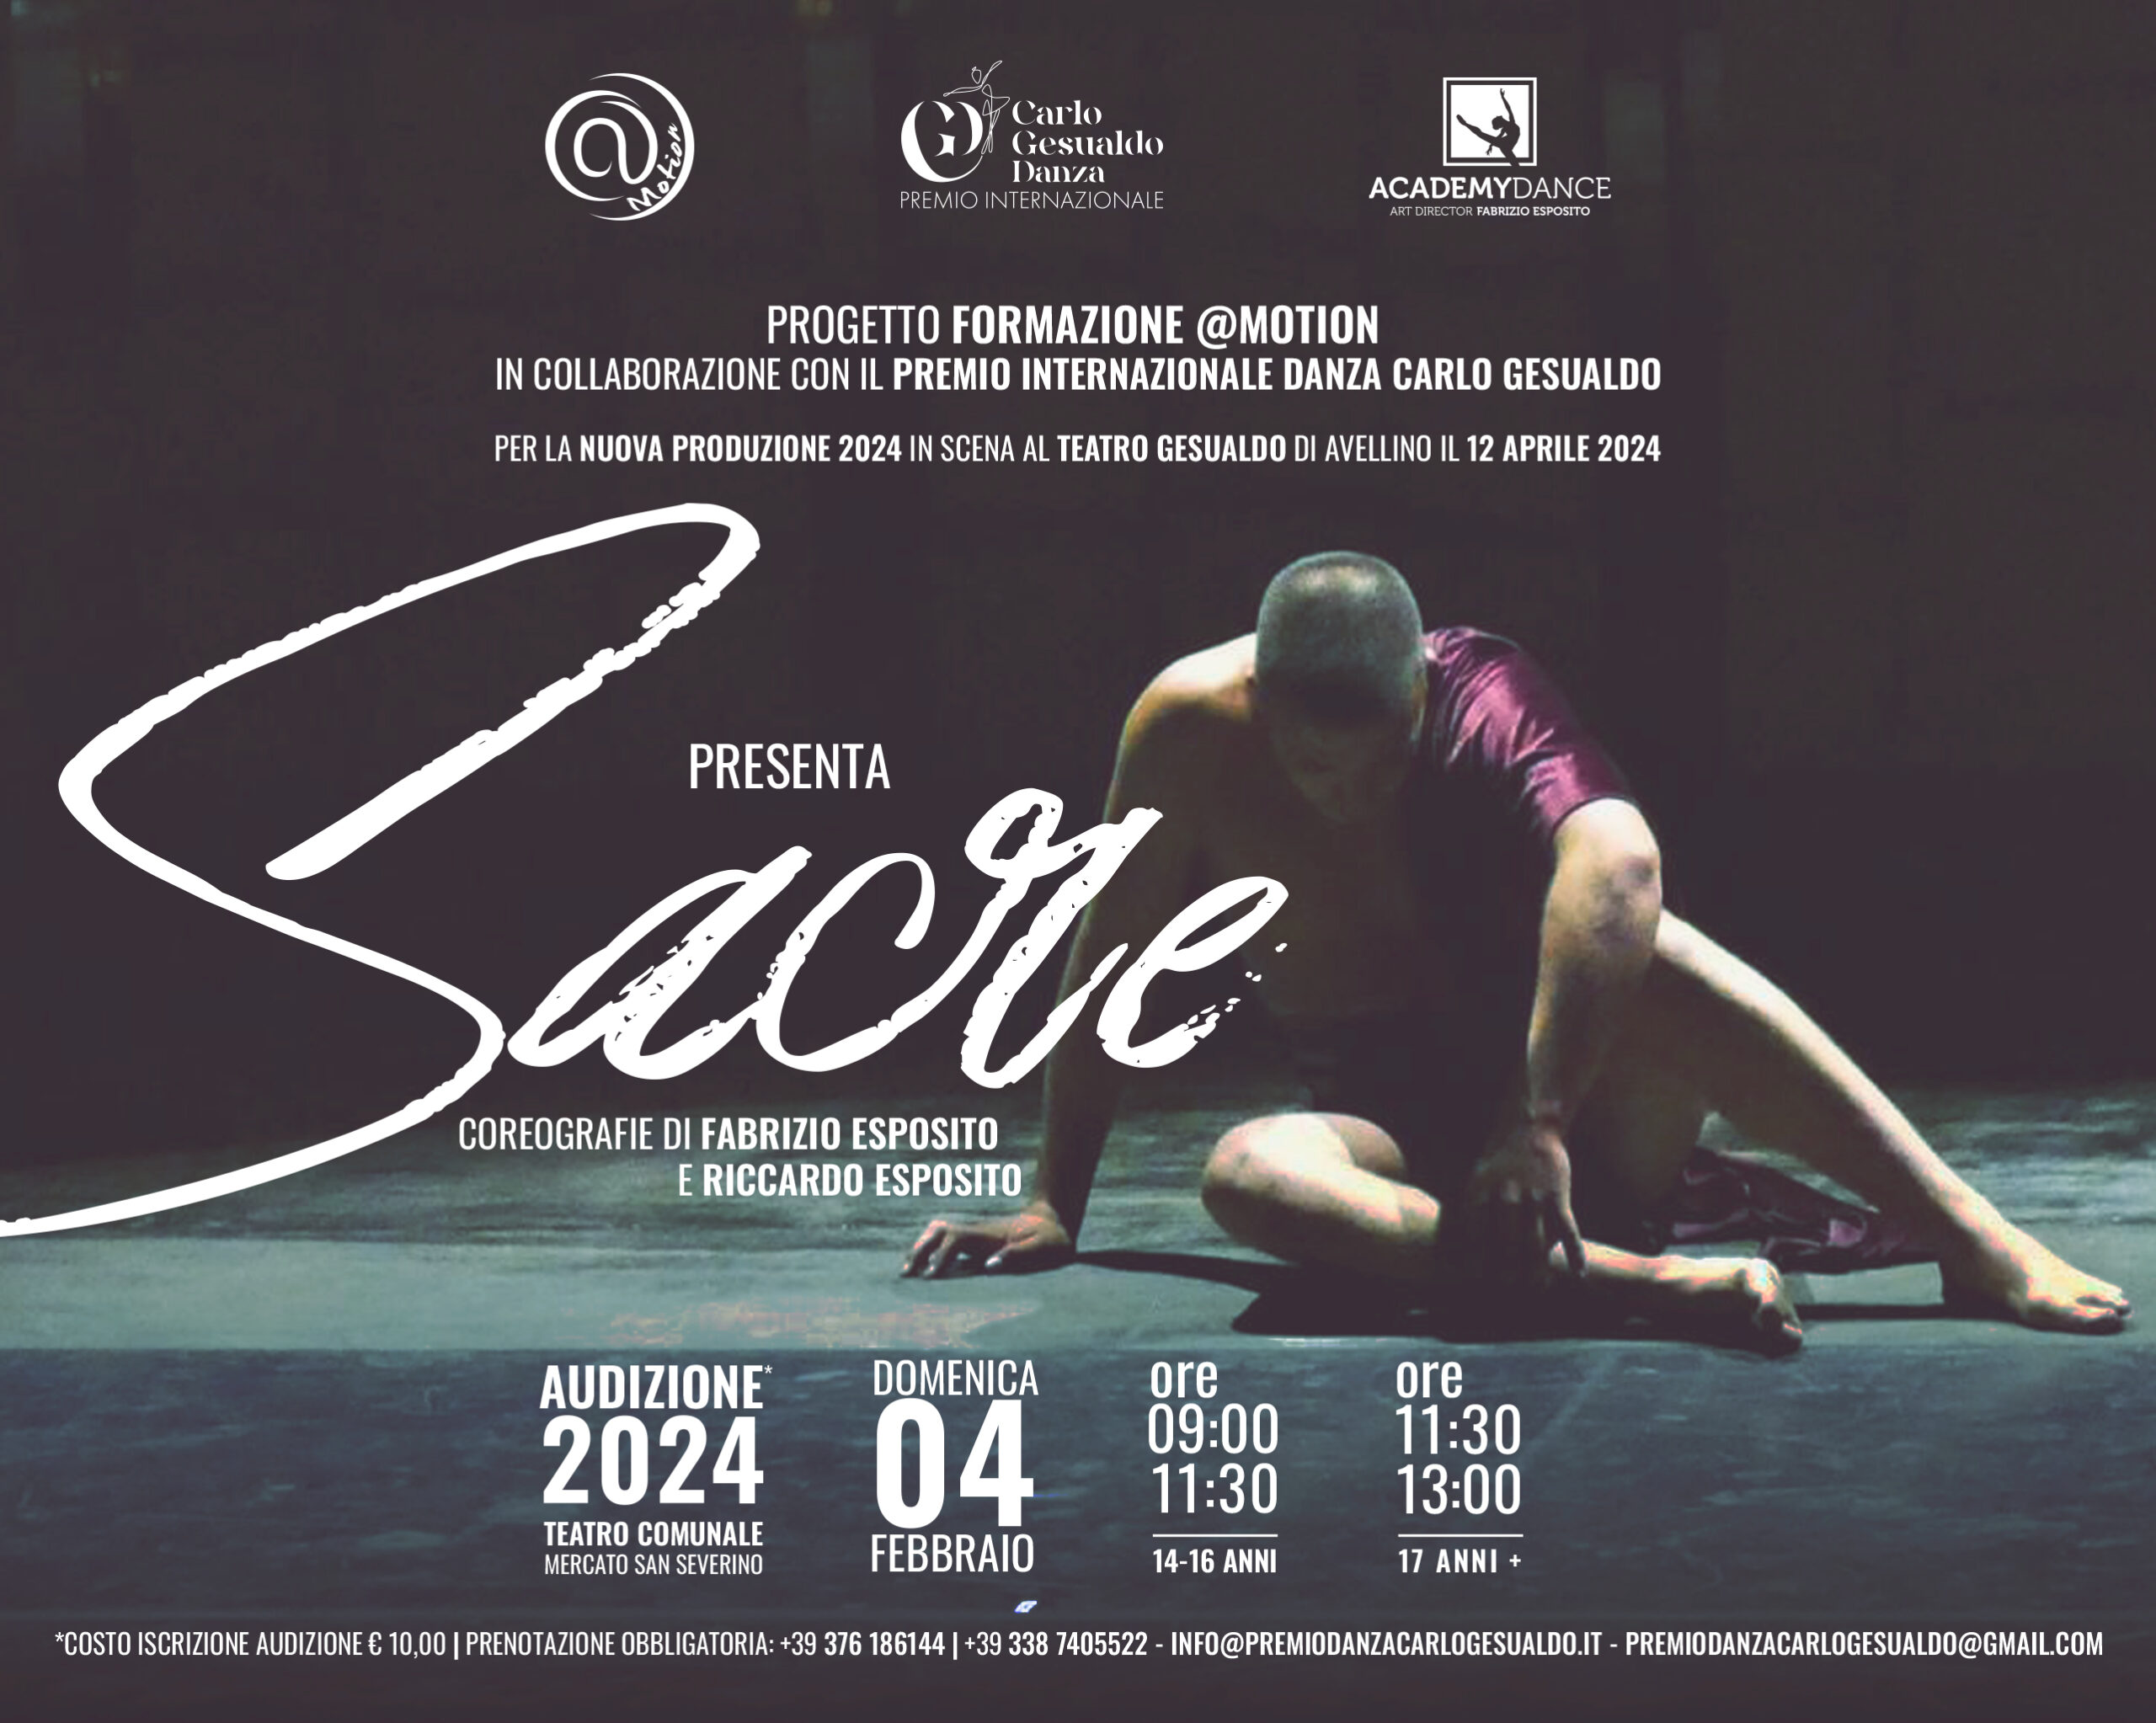 Mercato San Severino: Sacre, audizioni per giovani ballerini